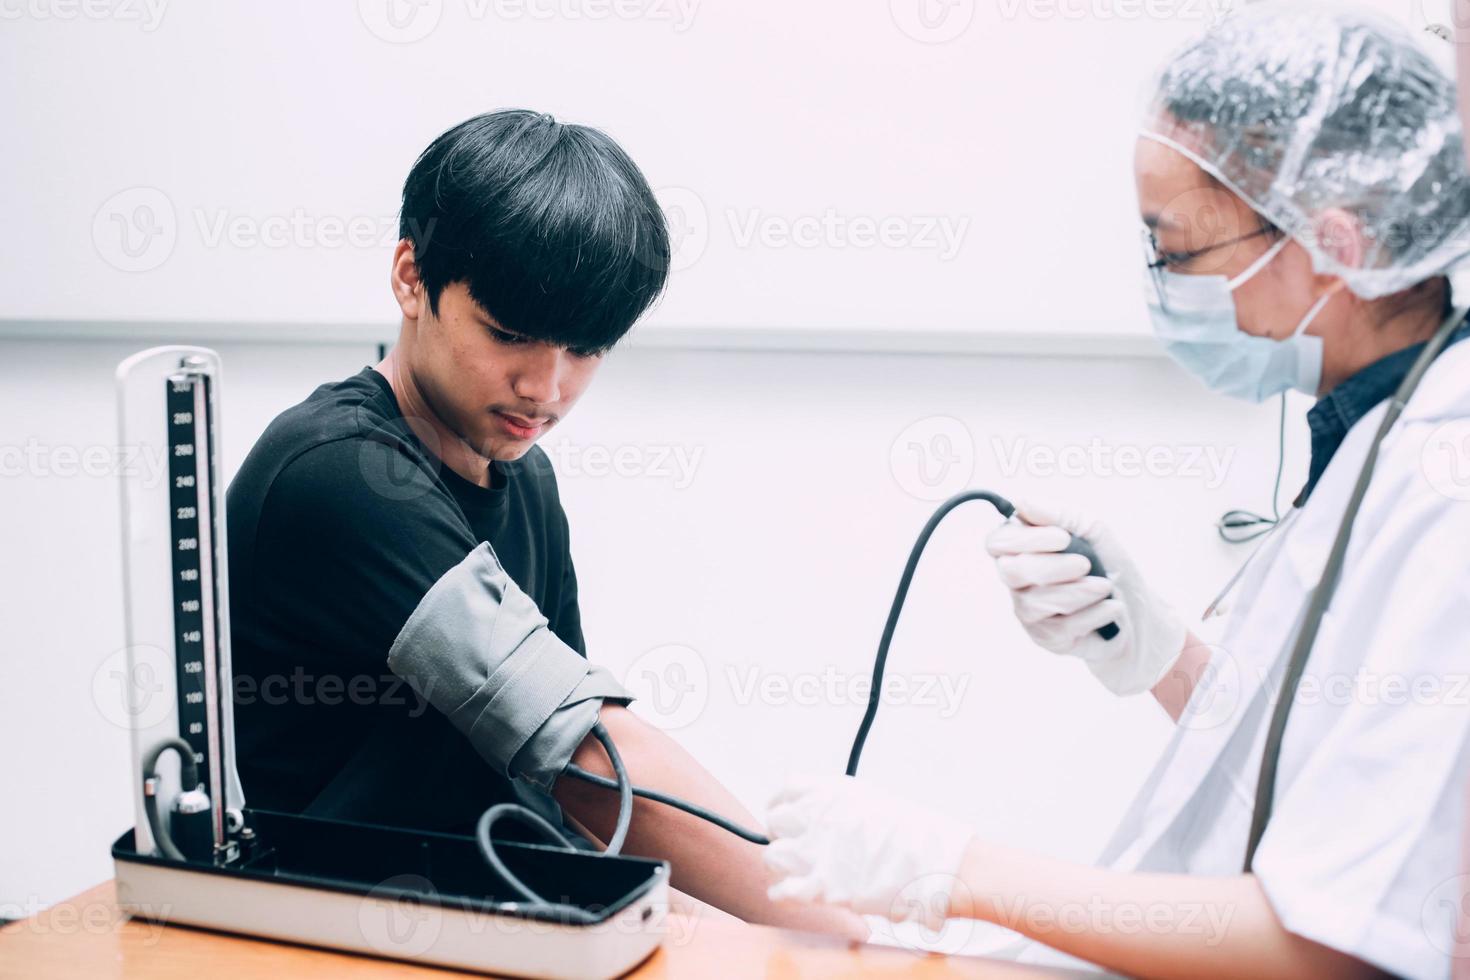 vrouwelijke arts die kerelpatiënt onderzoekt die hoge lage arteriële bloeddruk meet met behulp van medische tonometer in het ziekenhuis. foto